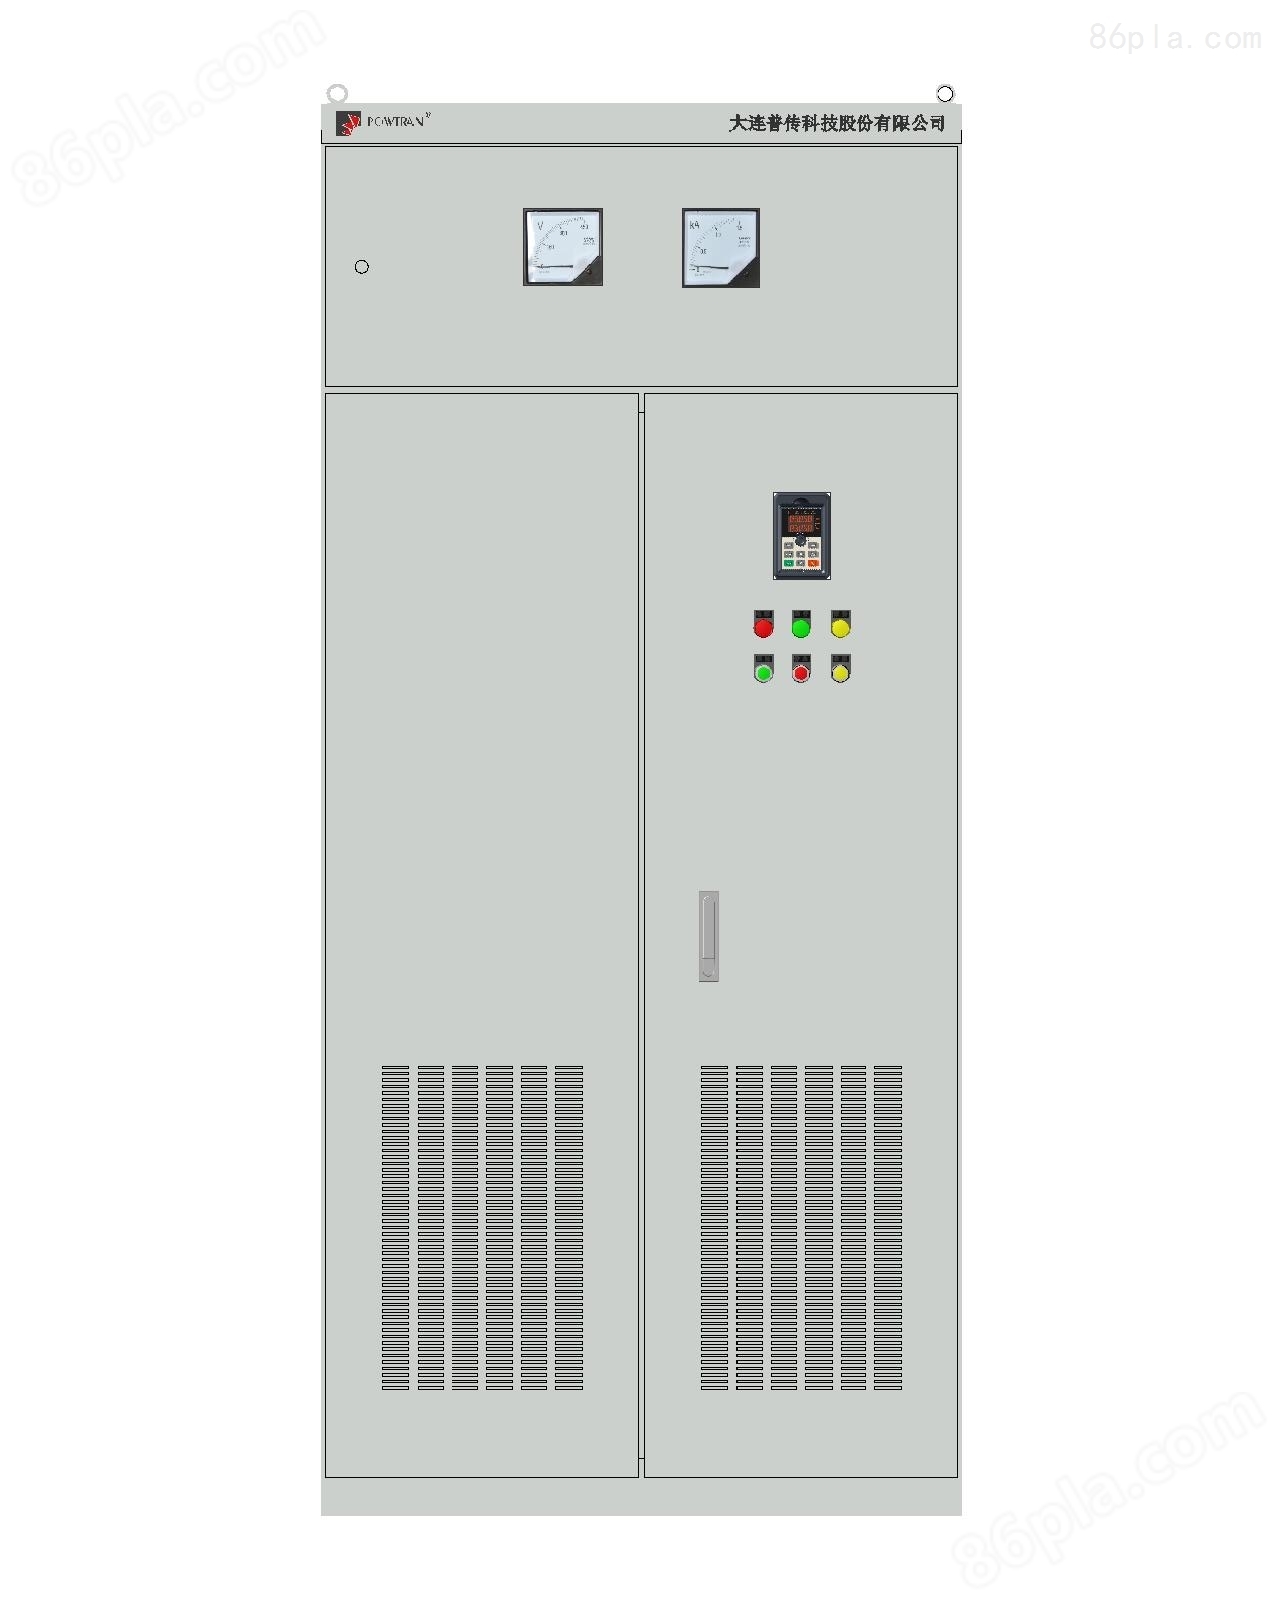 PS9550系列电机控制一体化装置